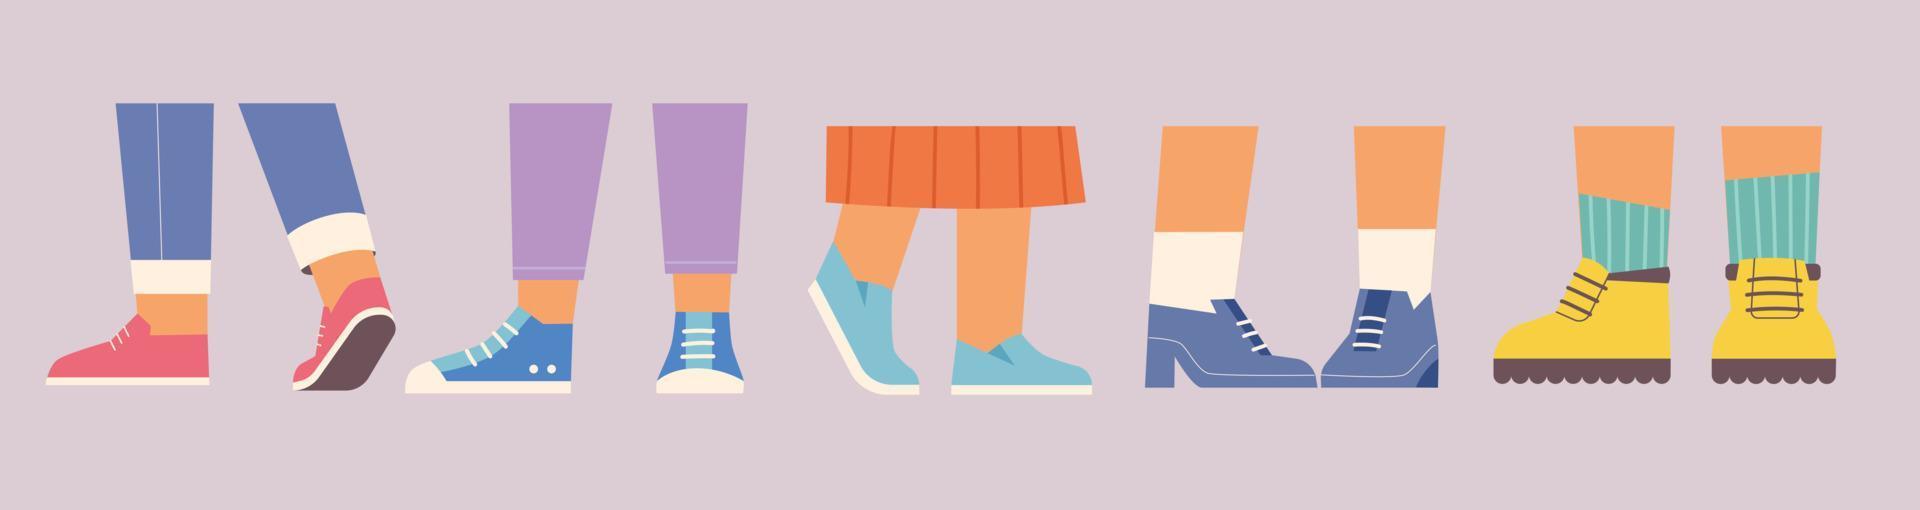 pies de personas en varios zapatos ilustración de vector de estilo de diseño plano.